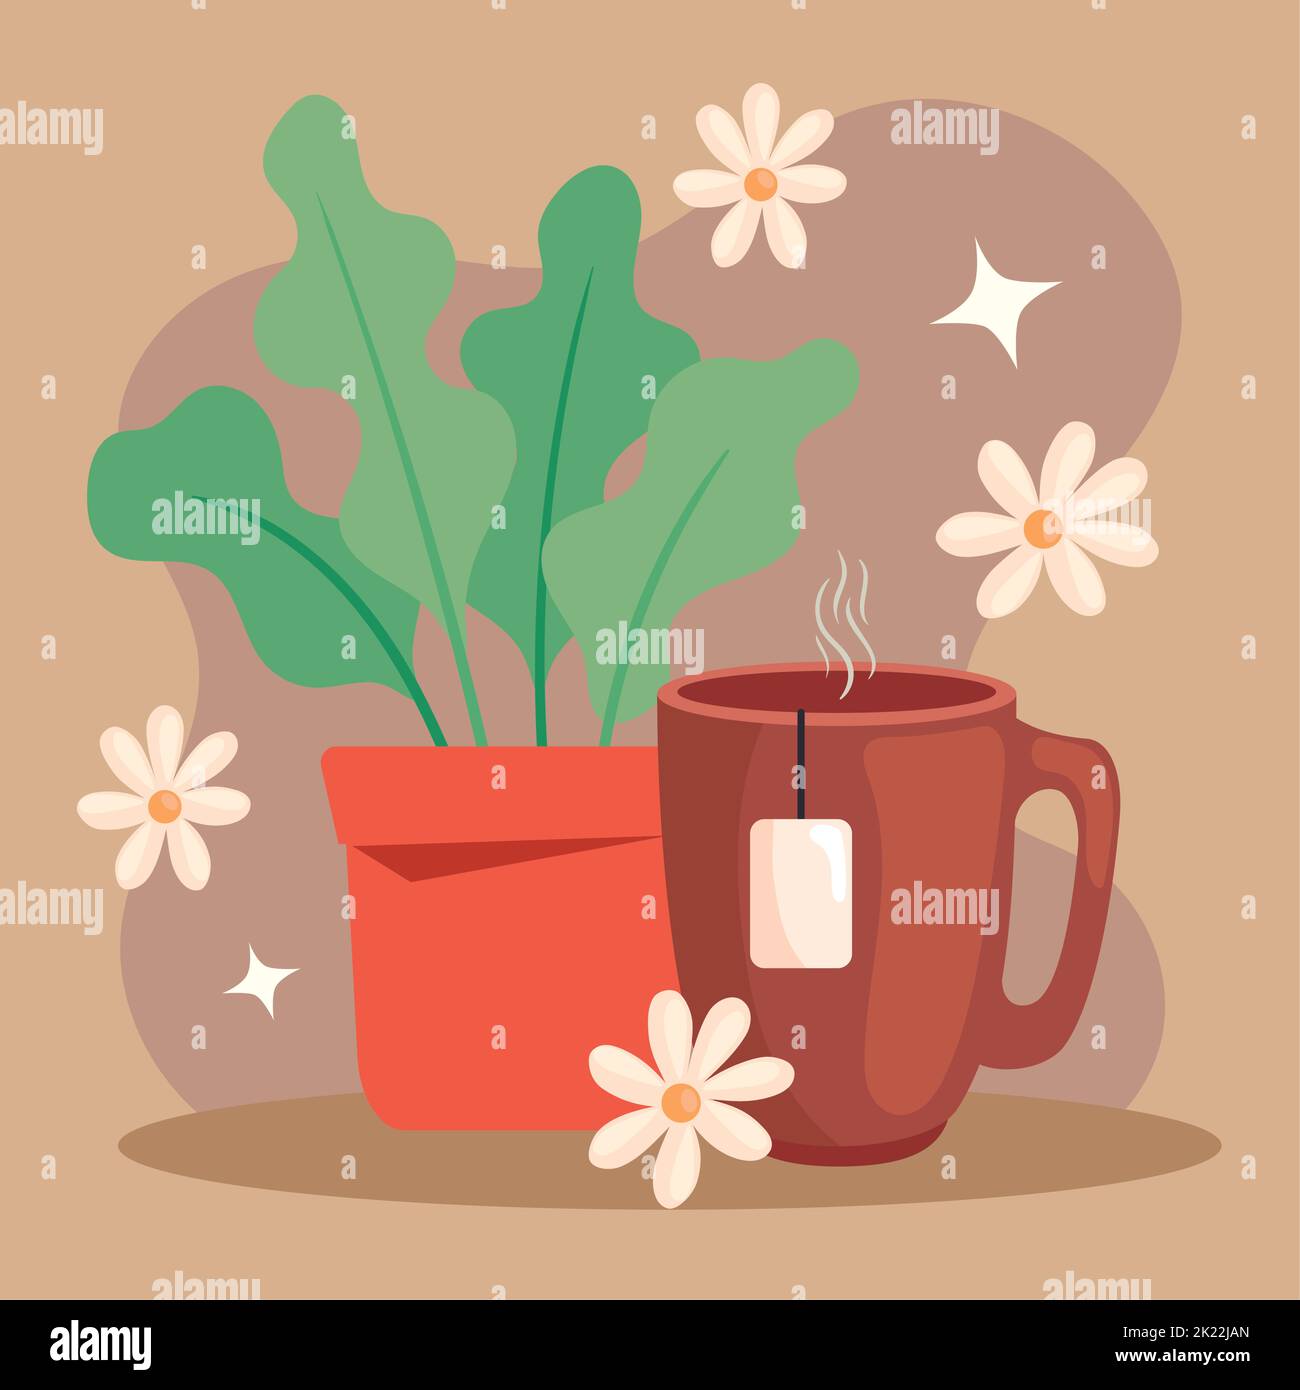 coffee mug with plant Stock Vector